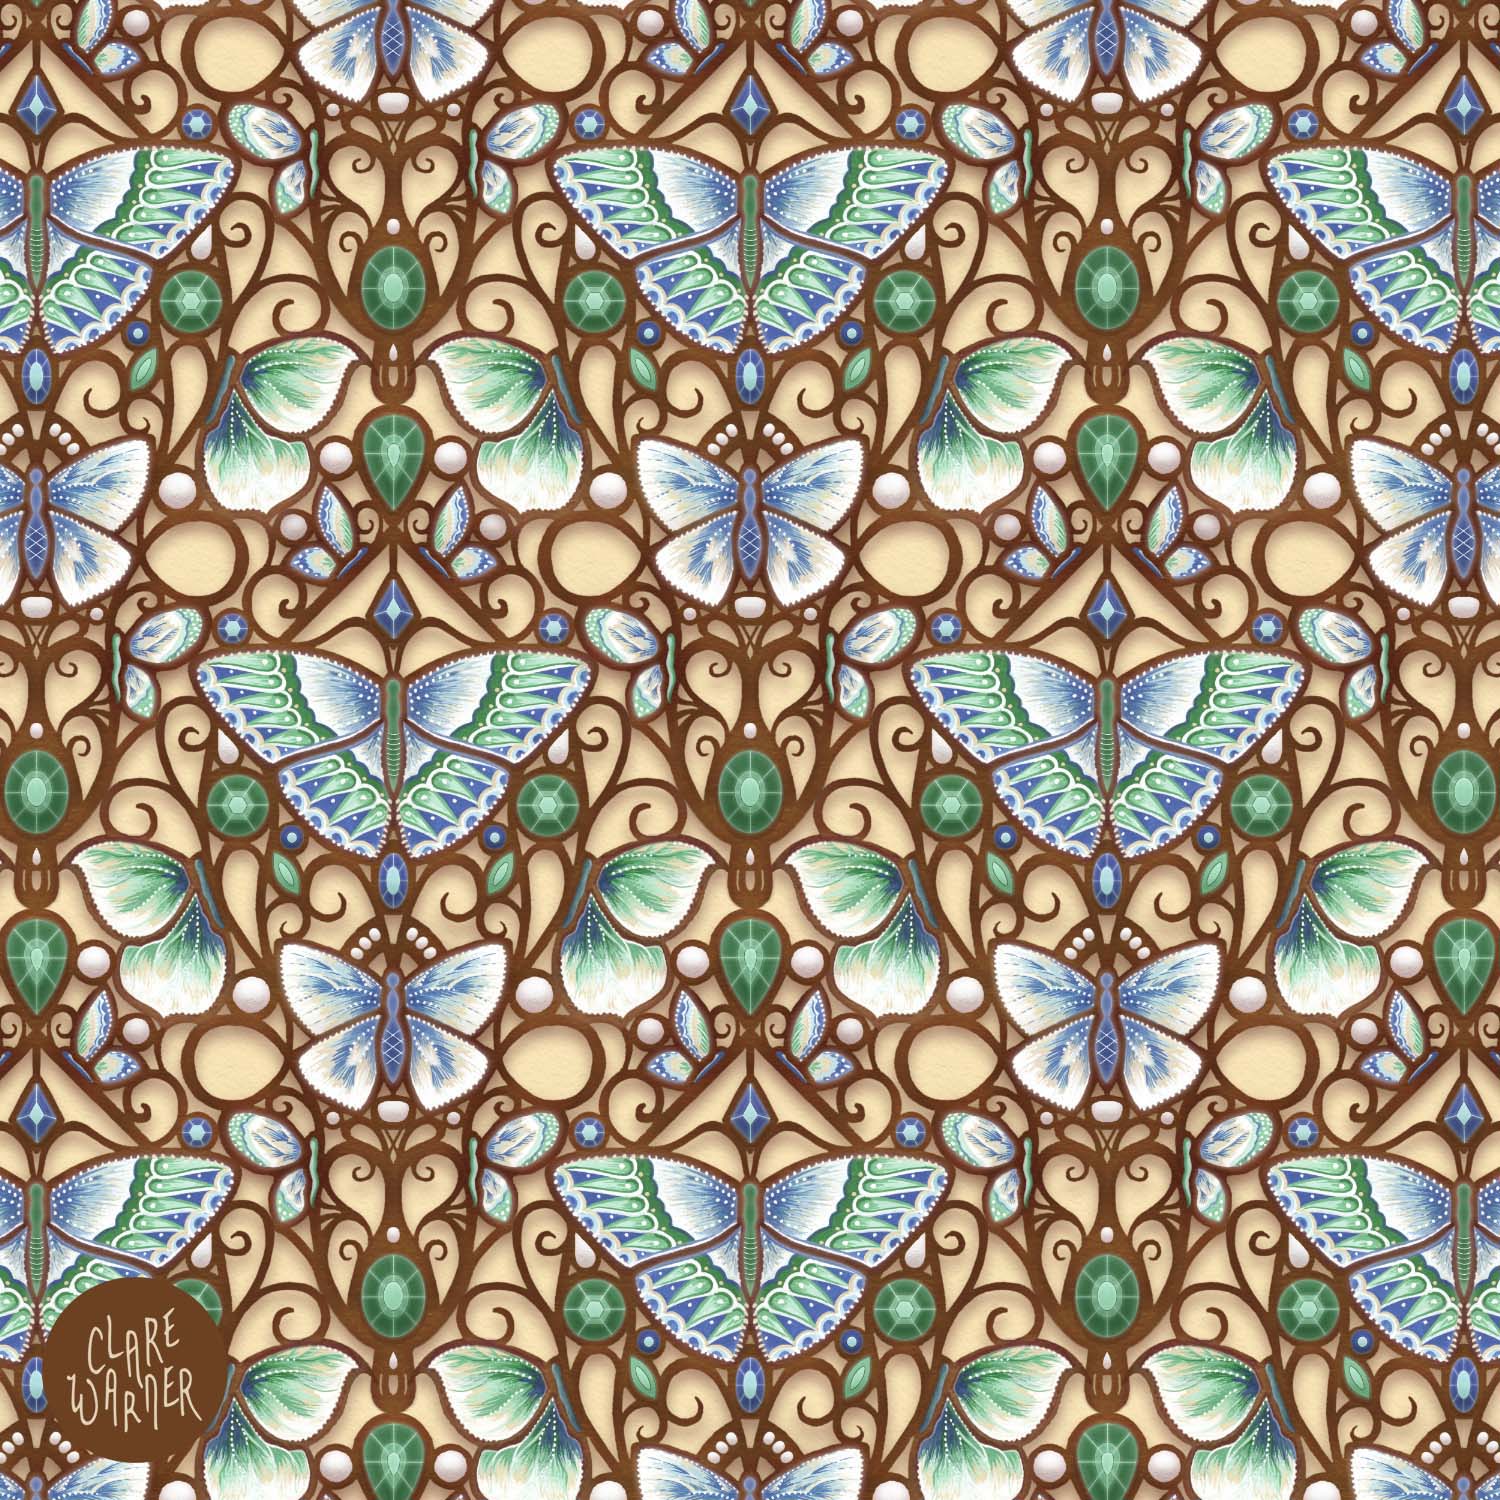 Art Nouveau inspired butterfly pattern